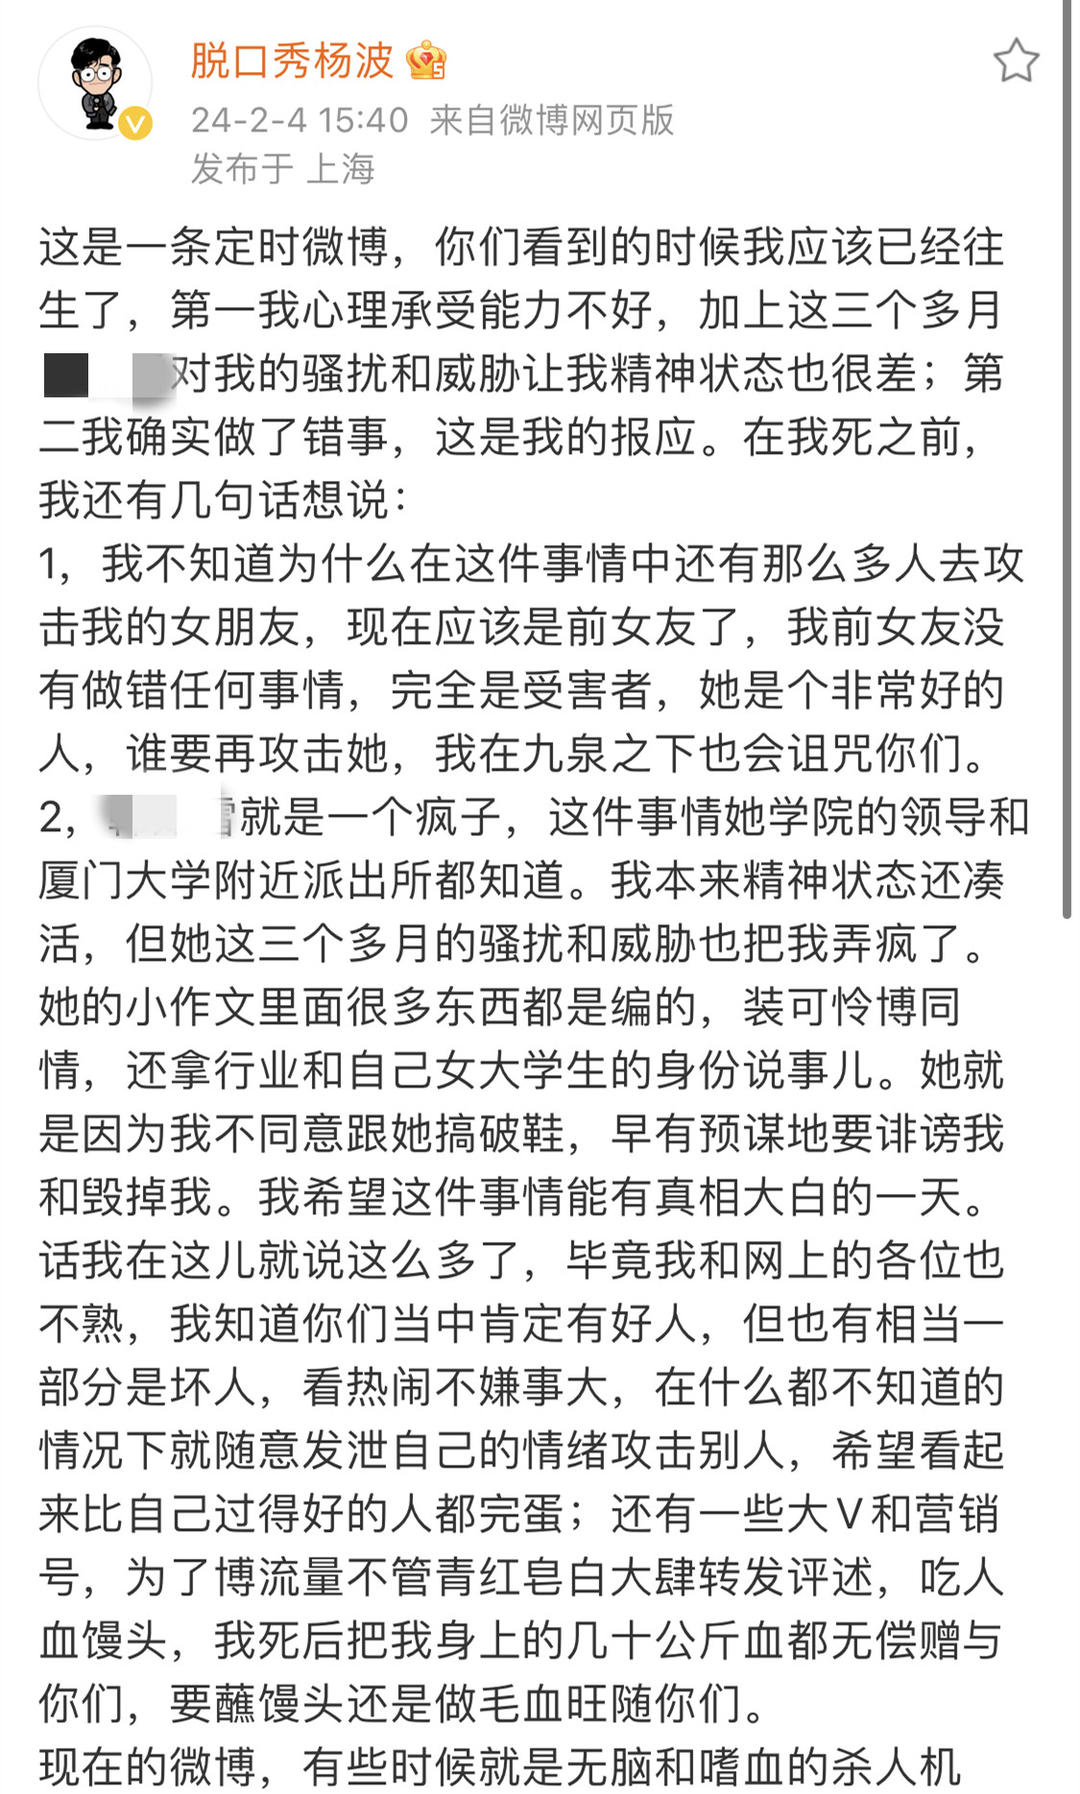 脱口秀演员杨波发布定时微博疑似自杀，目前已找到本人，无生命危险